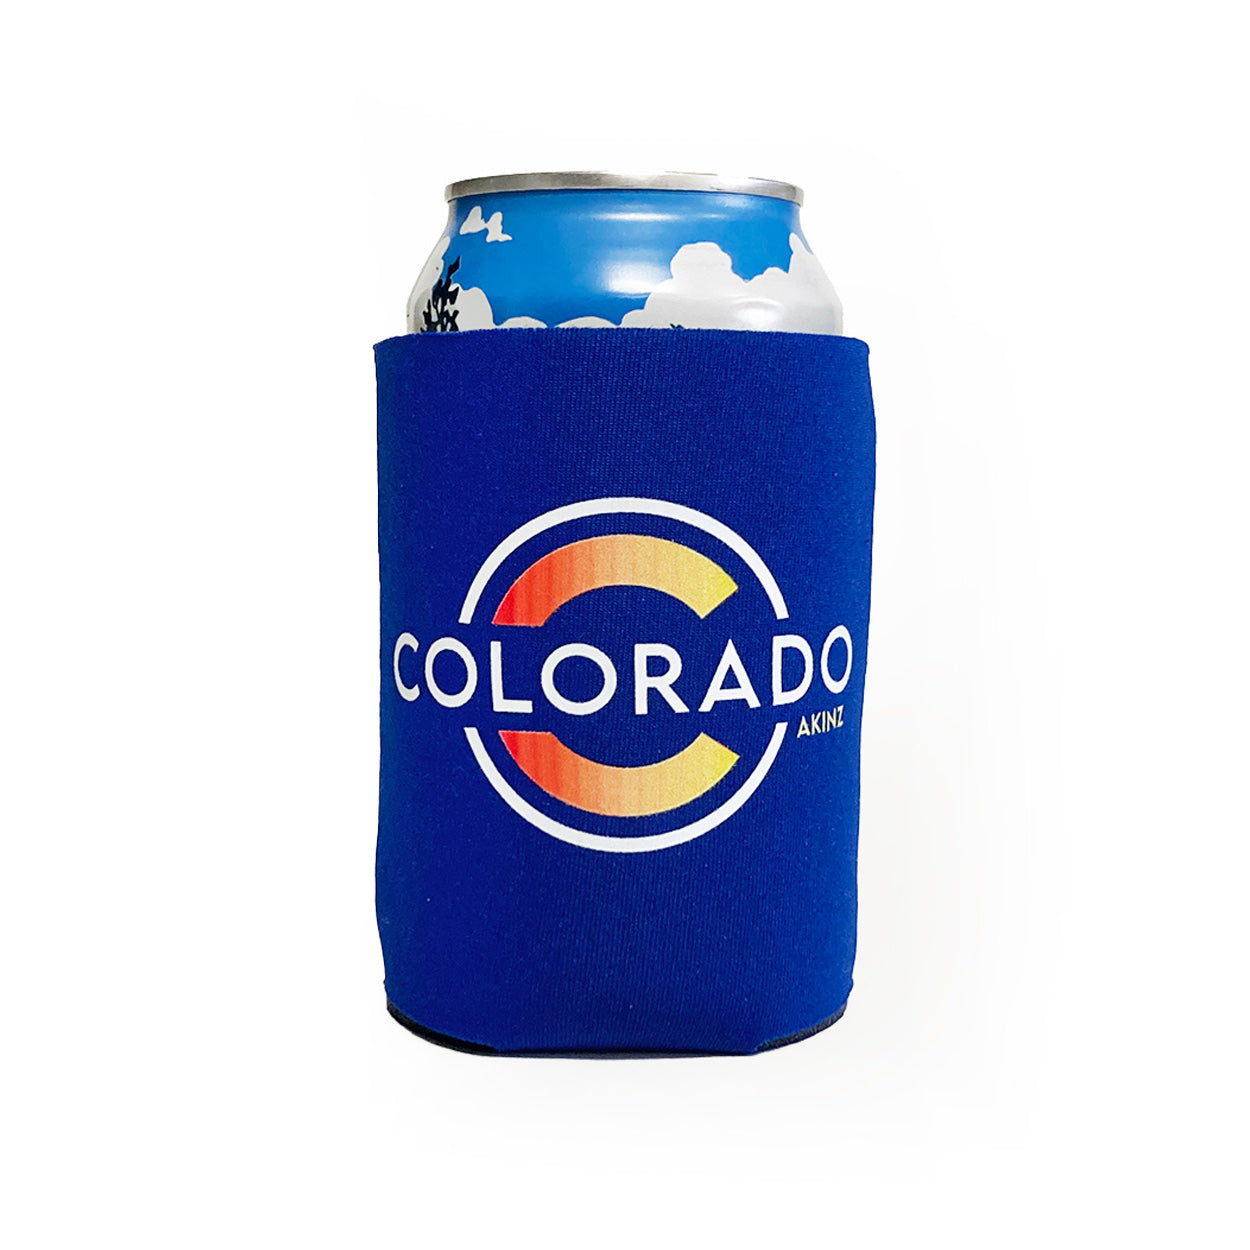 Classic-Colorado-Koozie-Drink_8529ca8e-0137-4576-90d2-ca5bbc7d6bd4.jpg